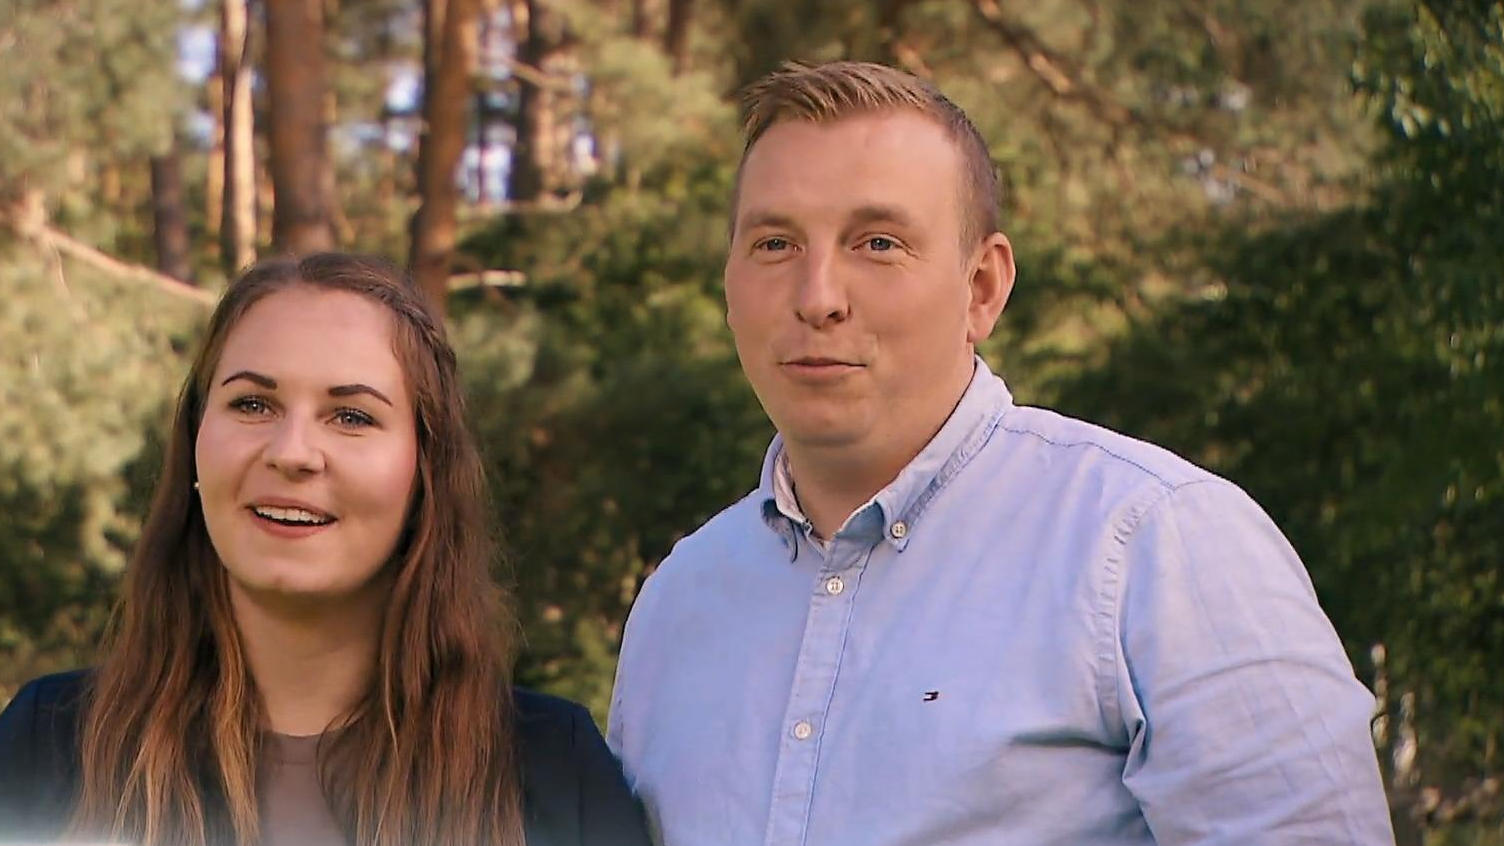 El granjero Ulf y Anna-Lena: "Somos el equipo soñado" Encontré la felicidad en el amor.